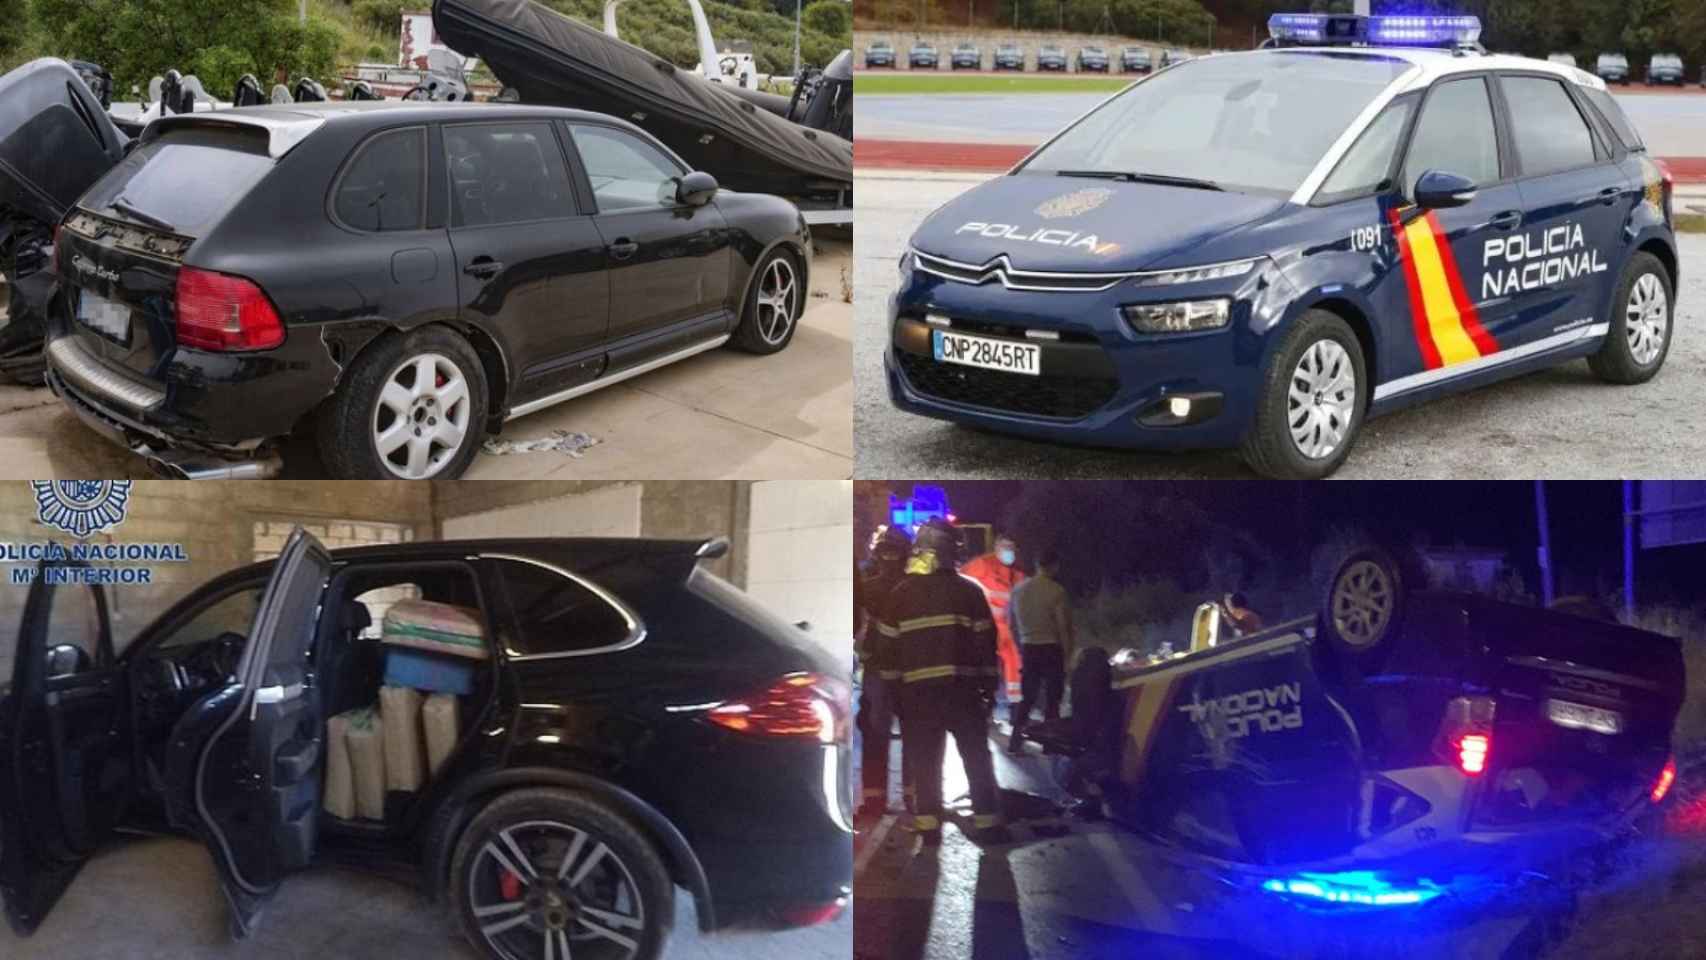 A la izquierda, coches usados por los narcos del sur de España para atentar contra los vehículos policiales (derecha).